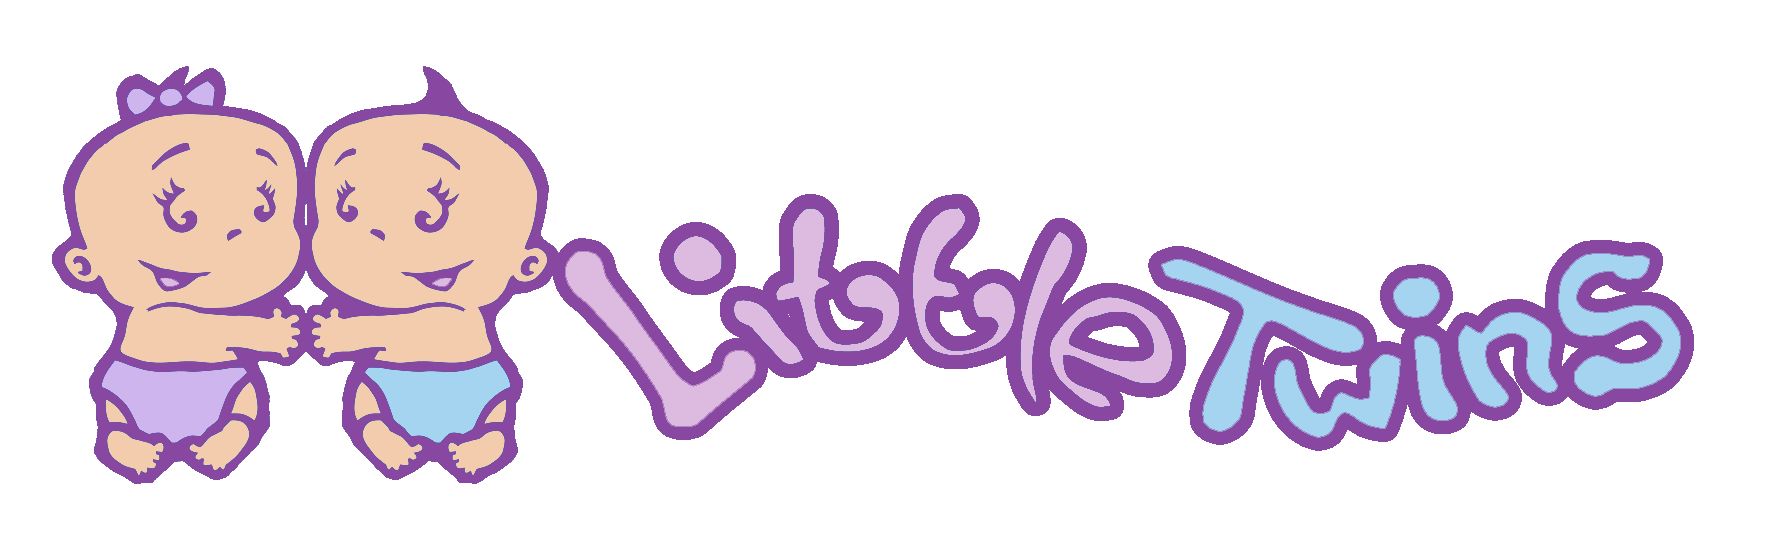 Логотип детского интернет-магазина для двойняшек - дизайнер scratcherz